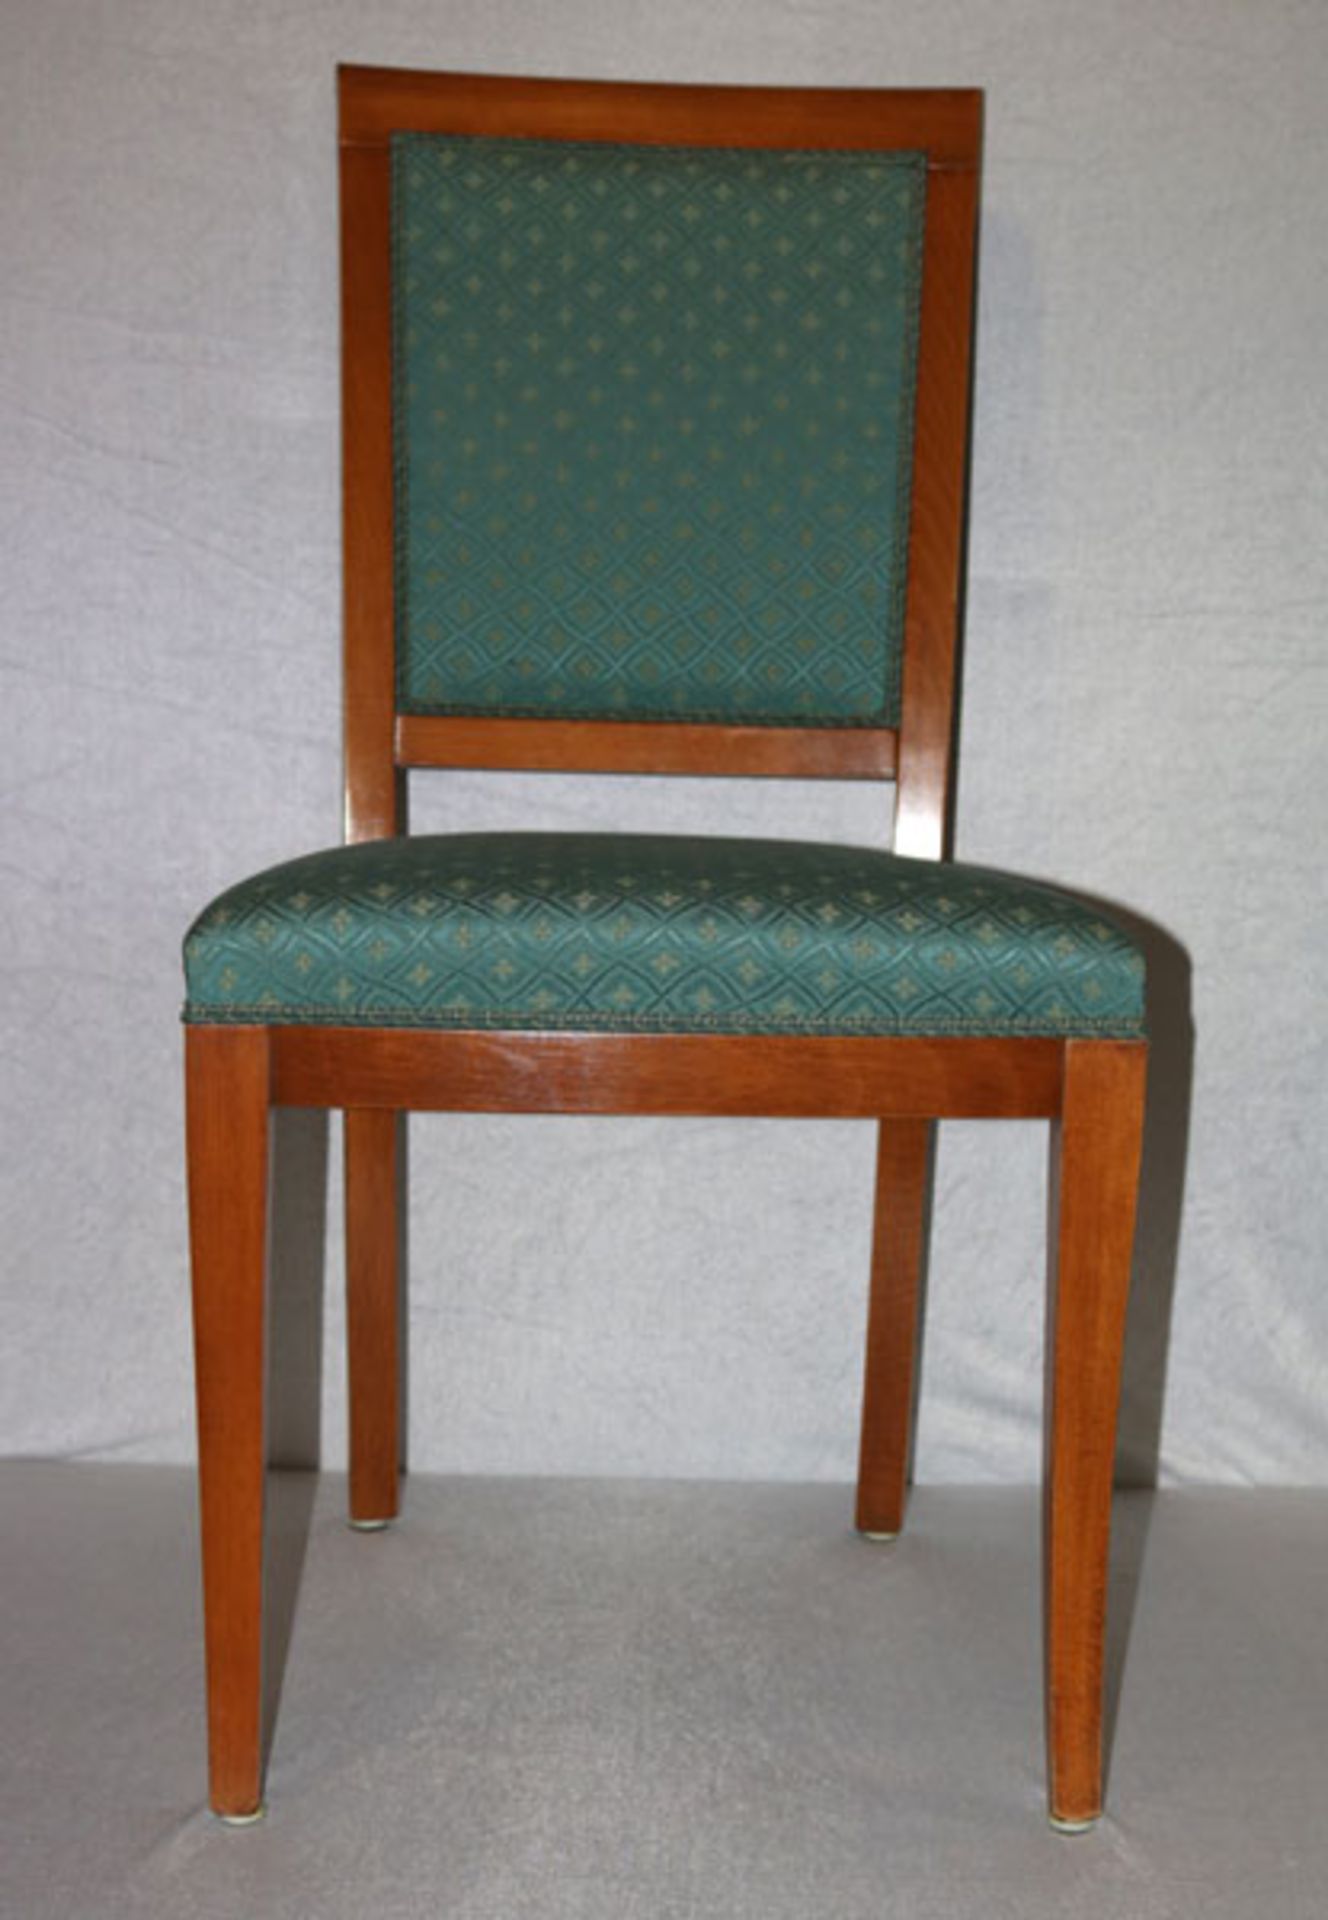 6 Stühle, Sitz und Lehne gepolstert und hellblau/beige bezogen, H 96 cm, B 47 cm, T 46 cm,